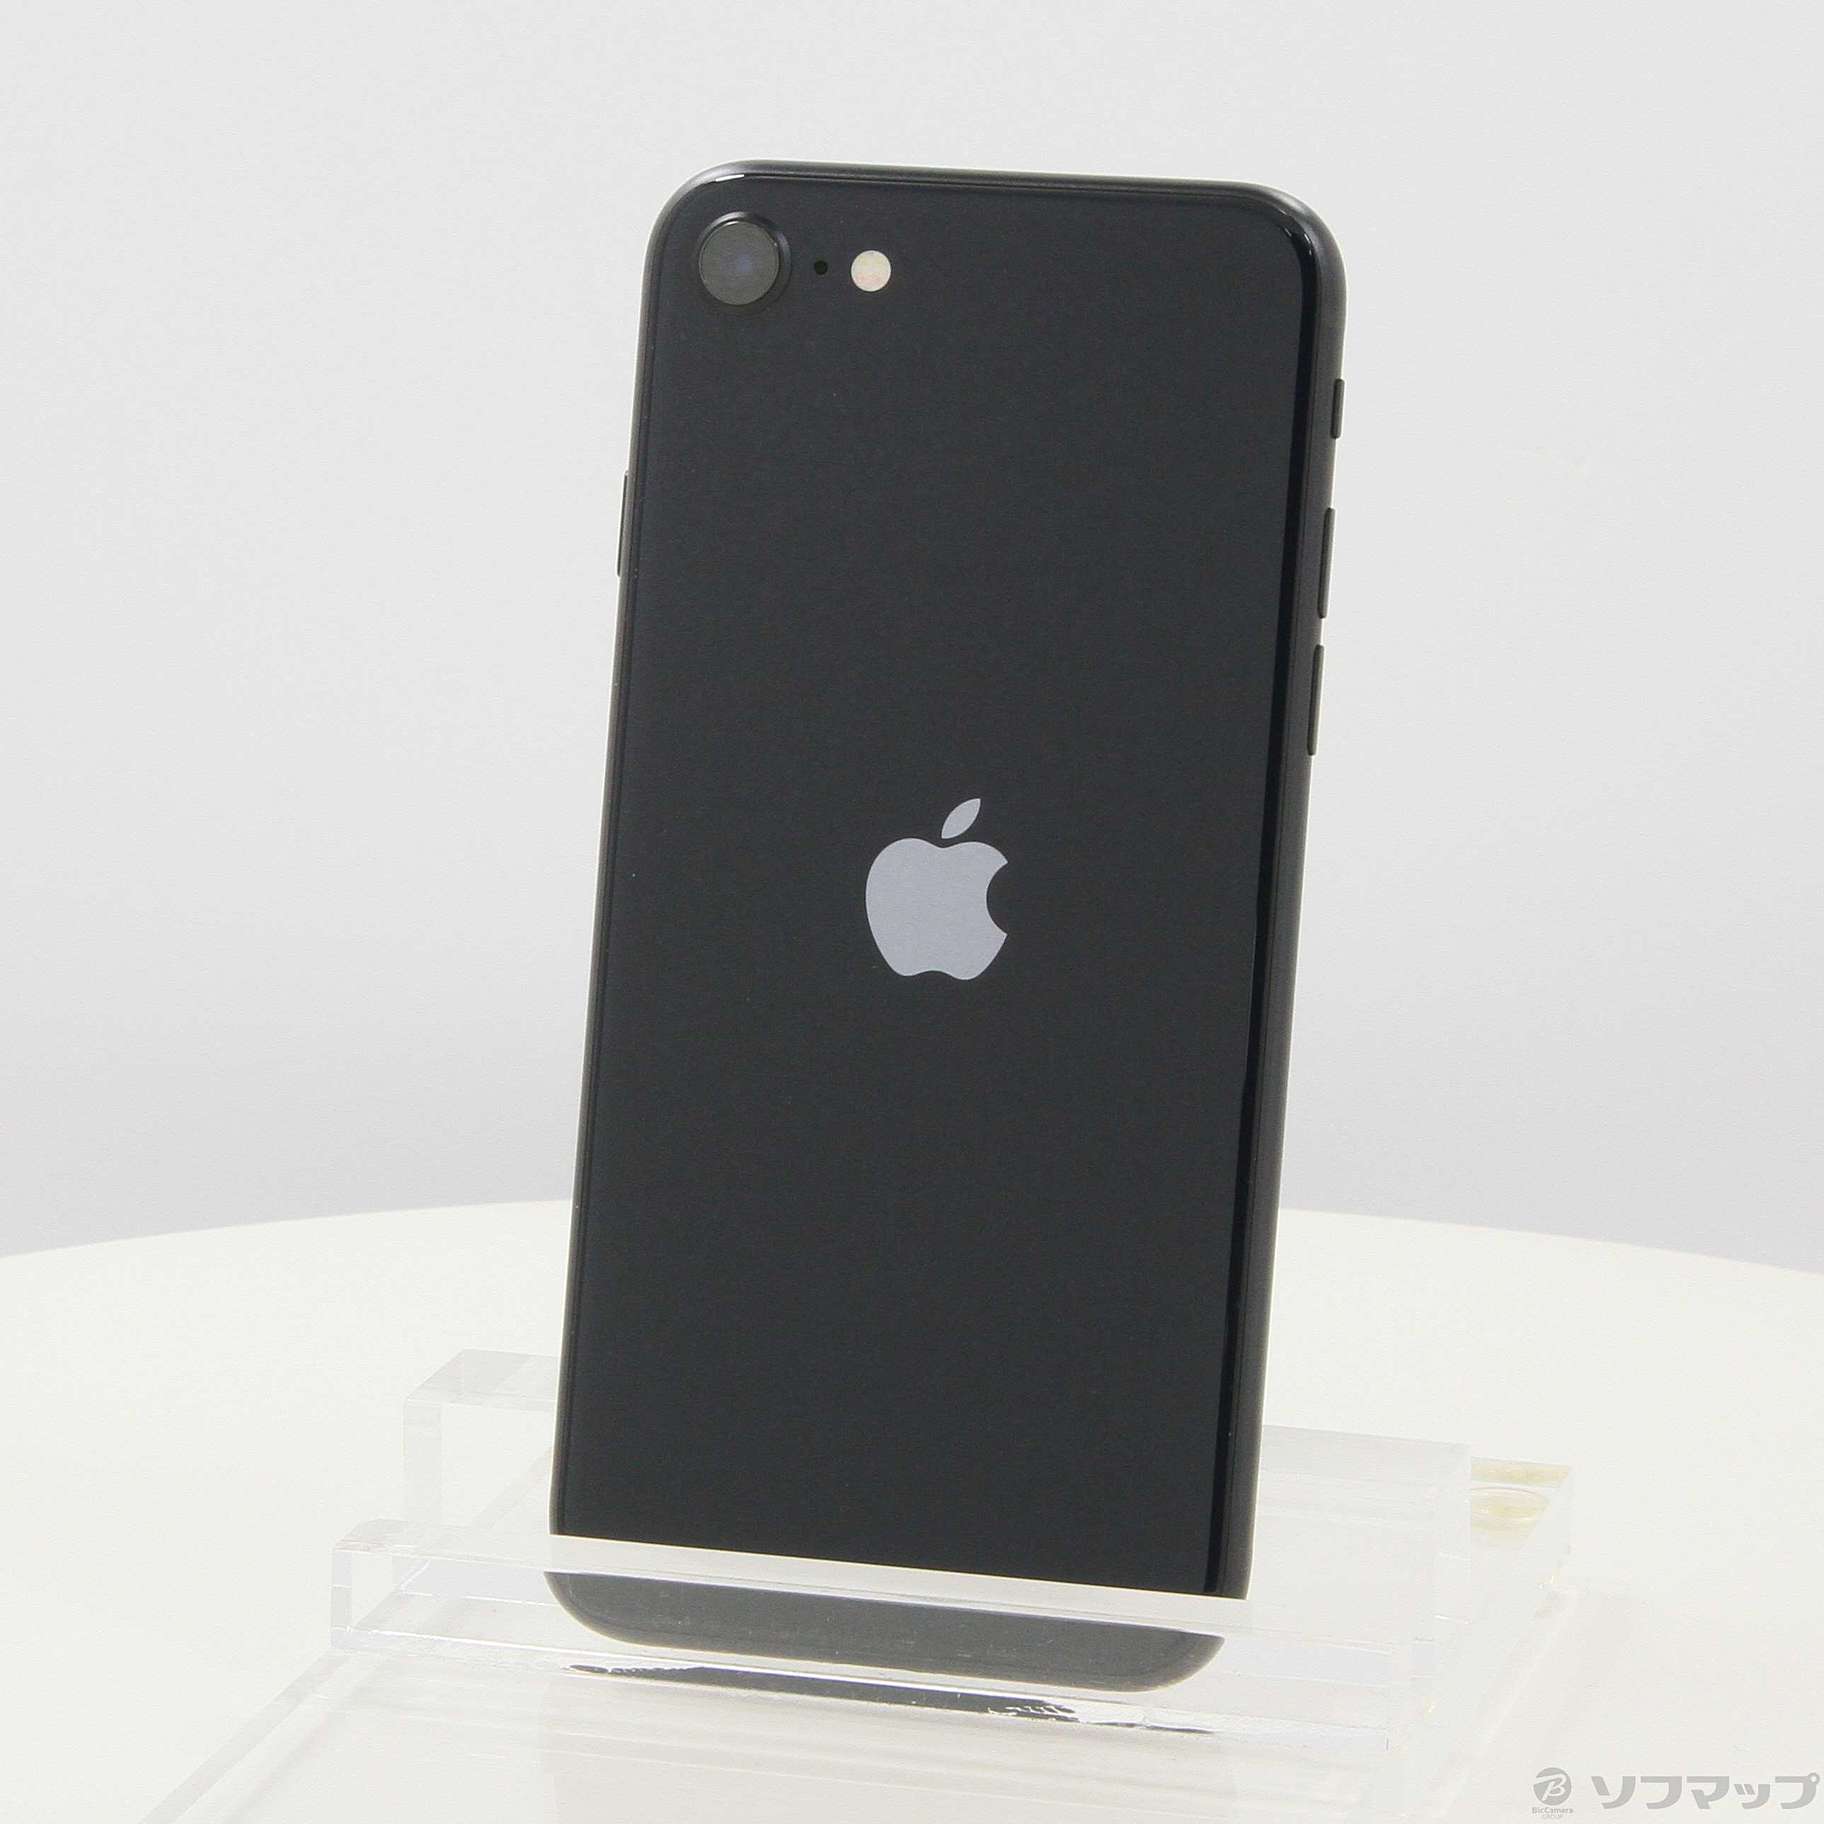 iPhone SE 第三世代 黒 ミッドナイト 128G